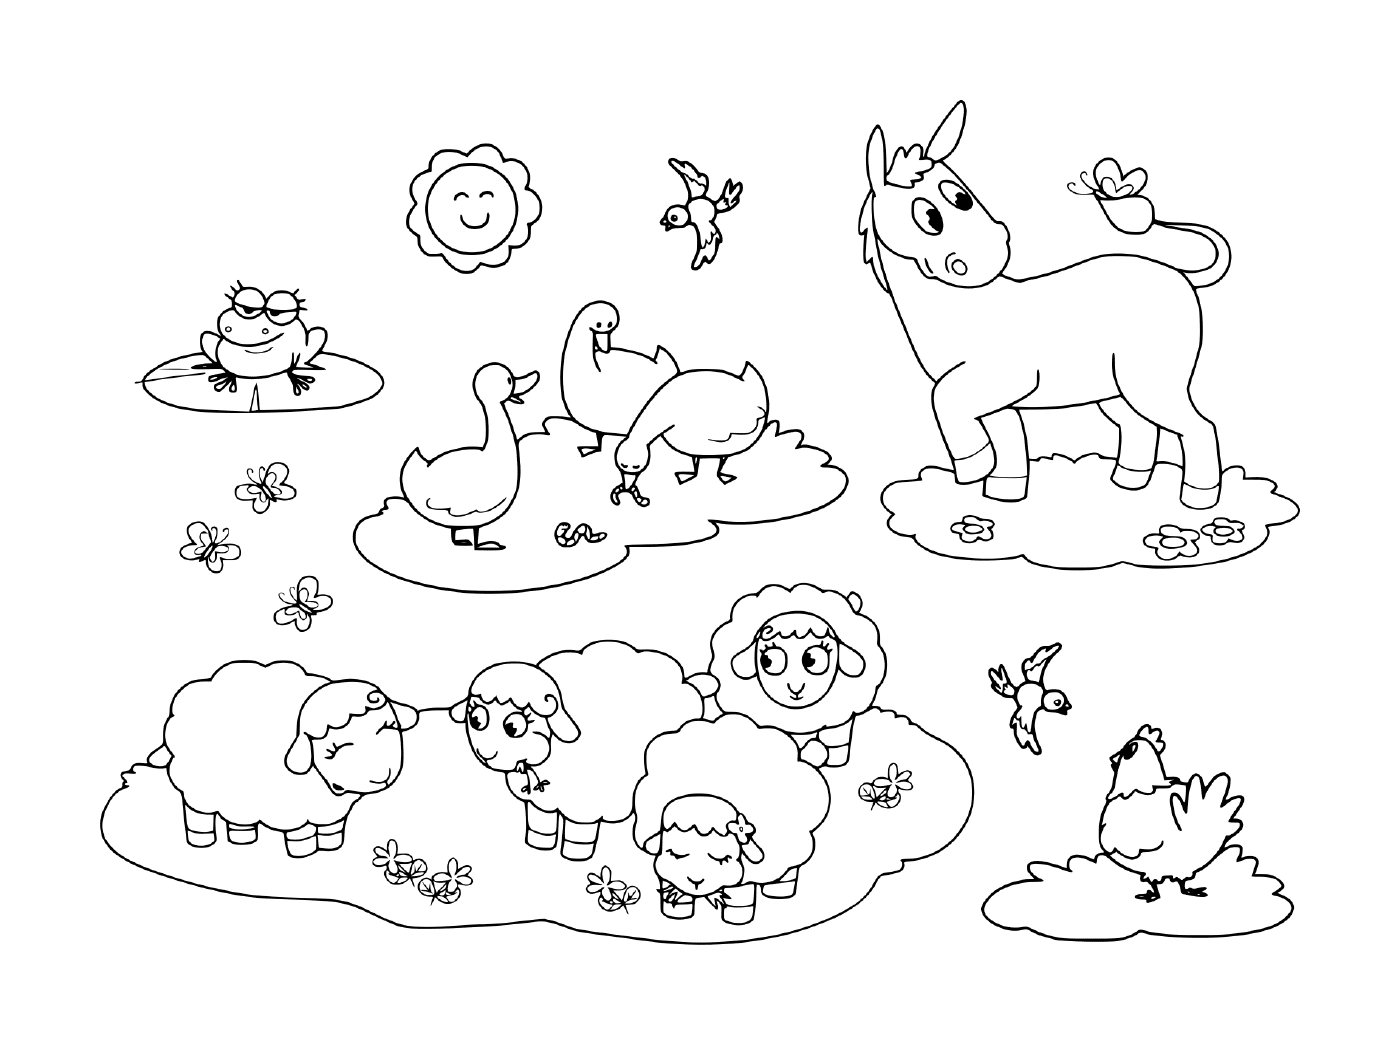  un gruppo di animali nell'erba, tra cui un asino, un'oca, una gallina, pecore e una rana 